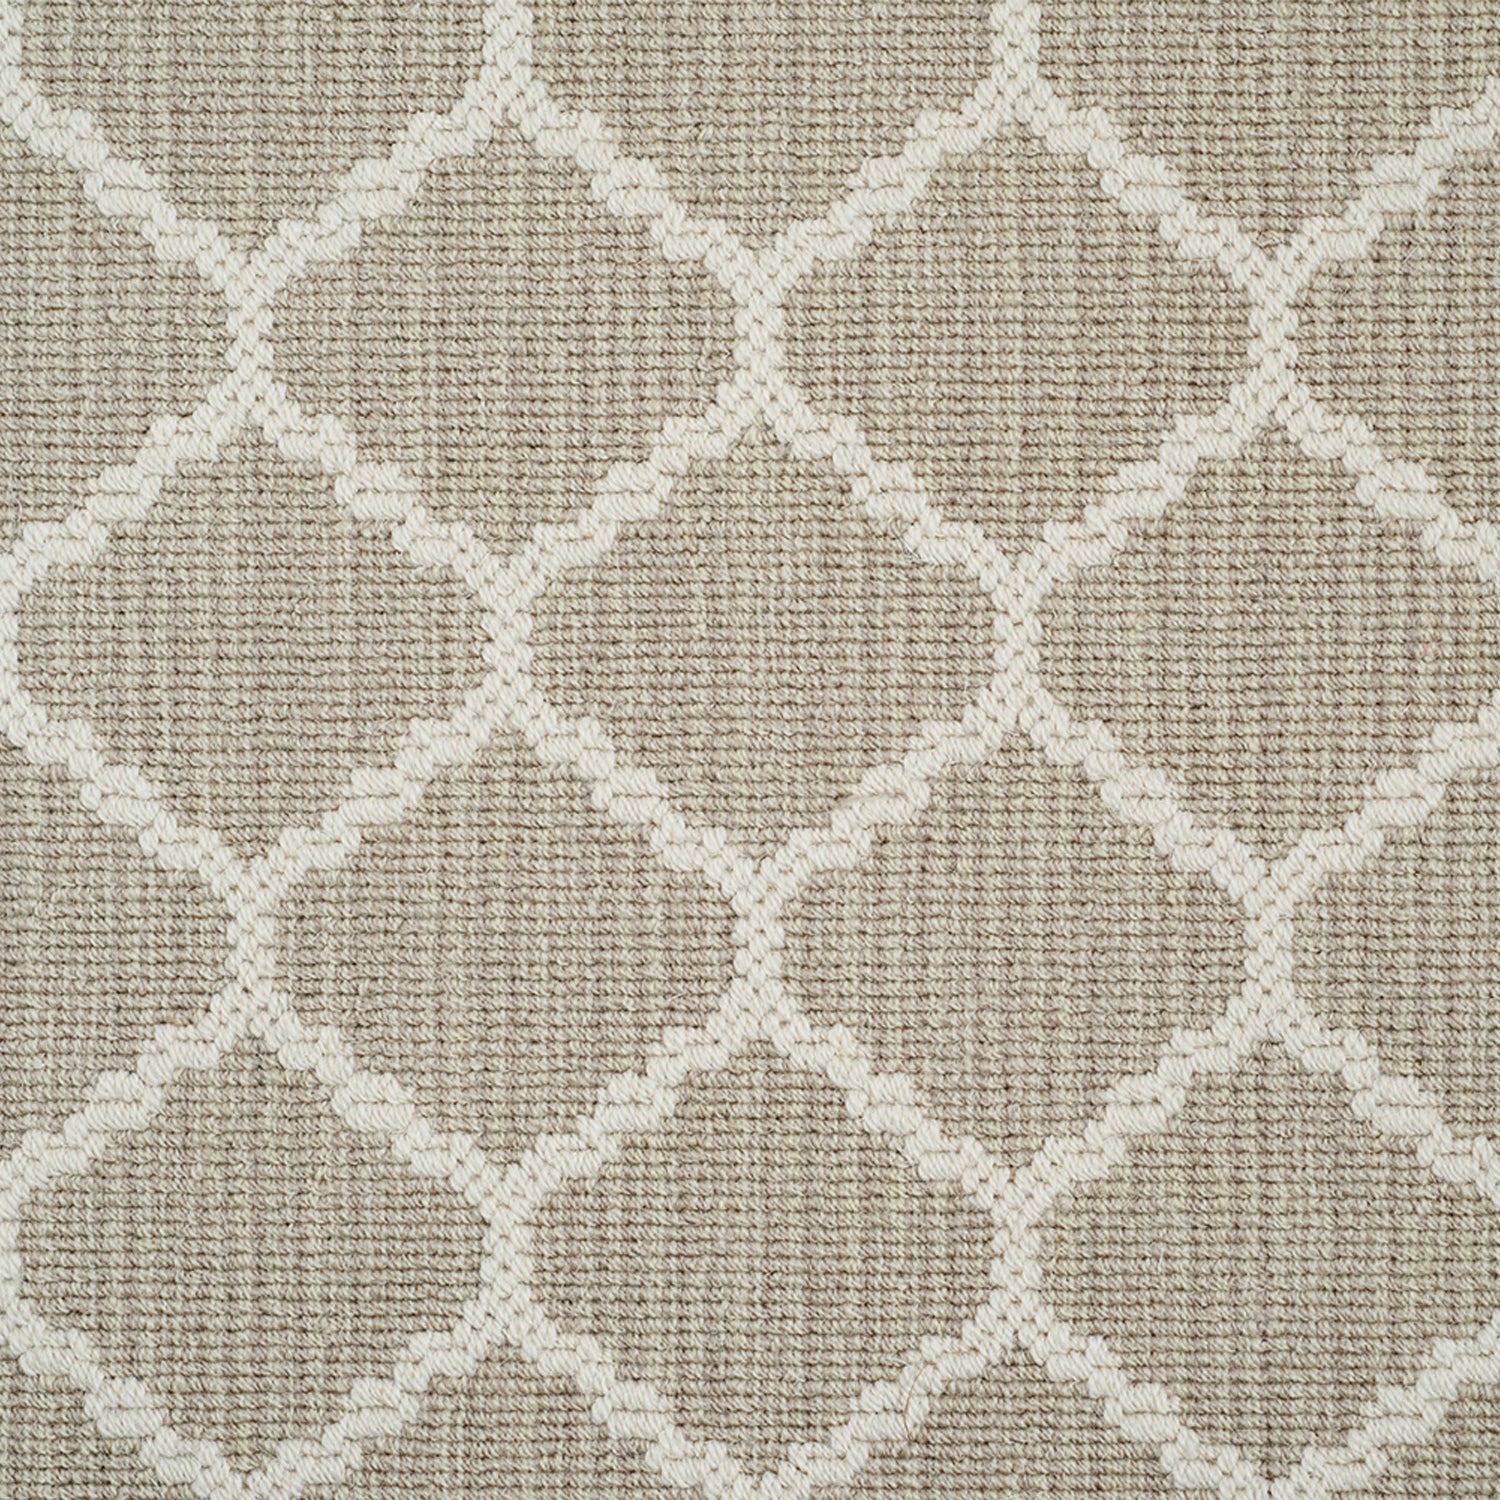 Wool-blend broadloom carpet swatch in a chunky lattice weave in cream on a mottled tan field.